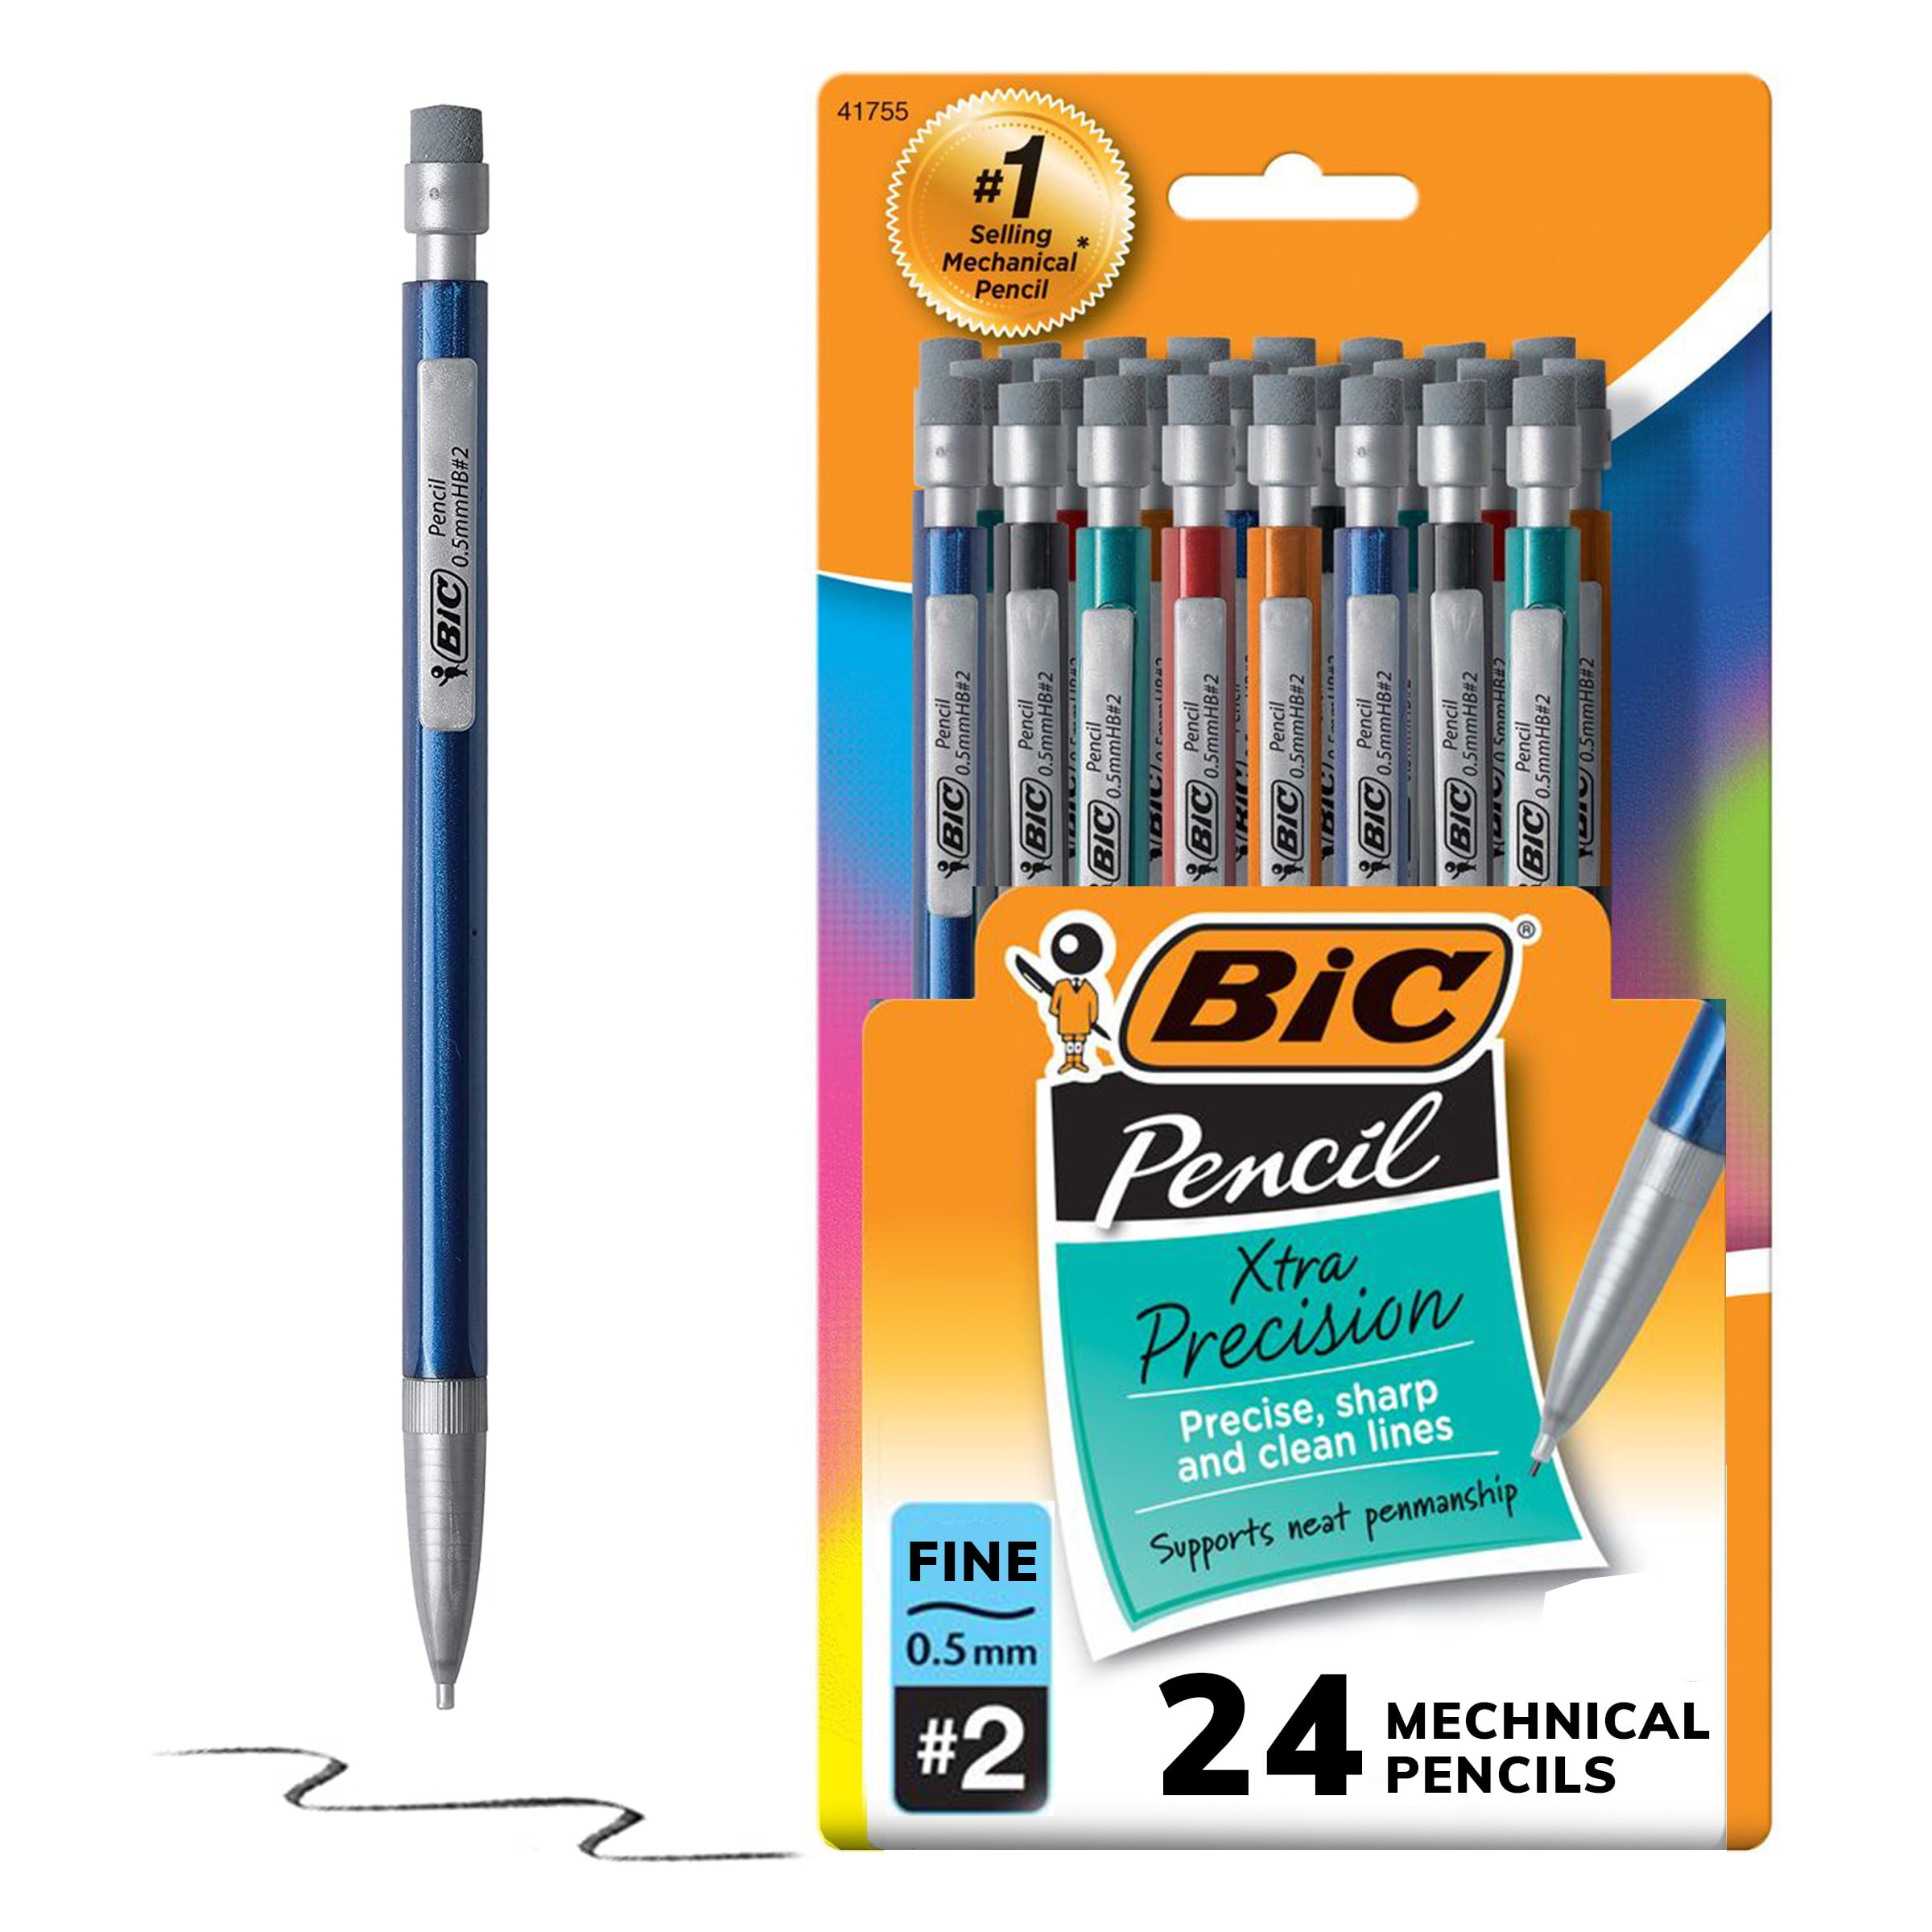 Bic Mechanical Pencils, Xtra Precision, Fine (0.5 mm), No. 2 - 24 mechanical pencils